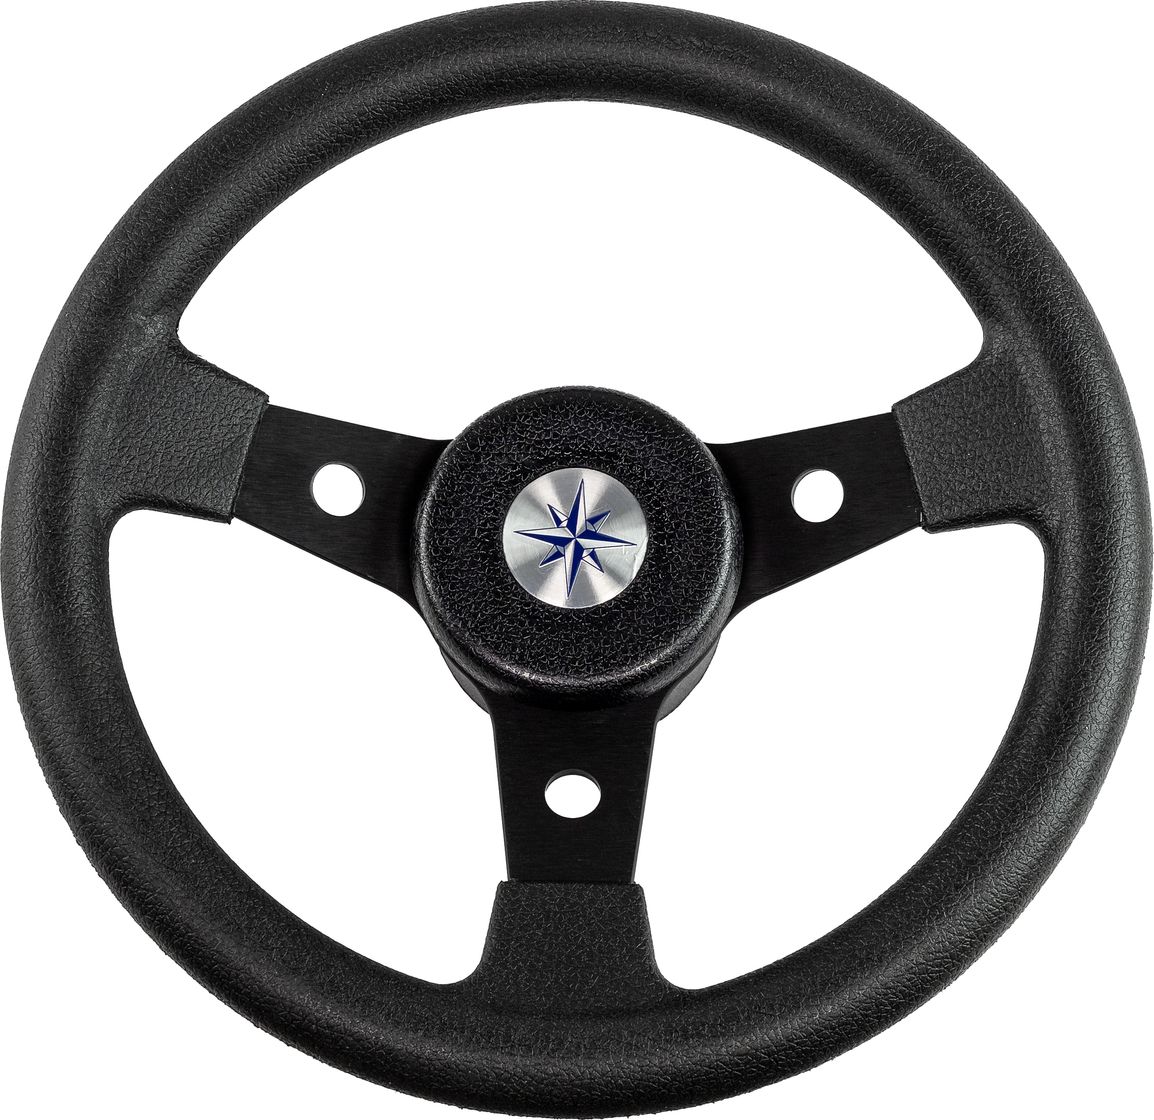 Рулевое колесо DELFINO обод и спицы черные д. 310 мм VN70104-01 колесо для трюкового самоката sub алюминий подшипник abec9 110мм анодированное 00 180109